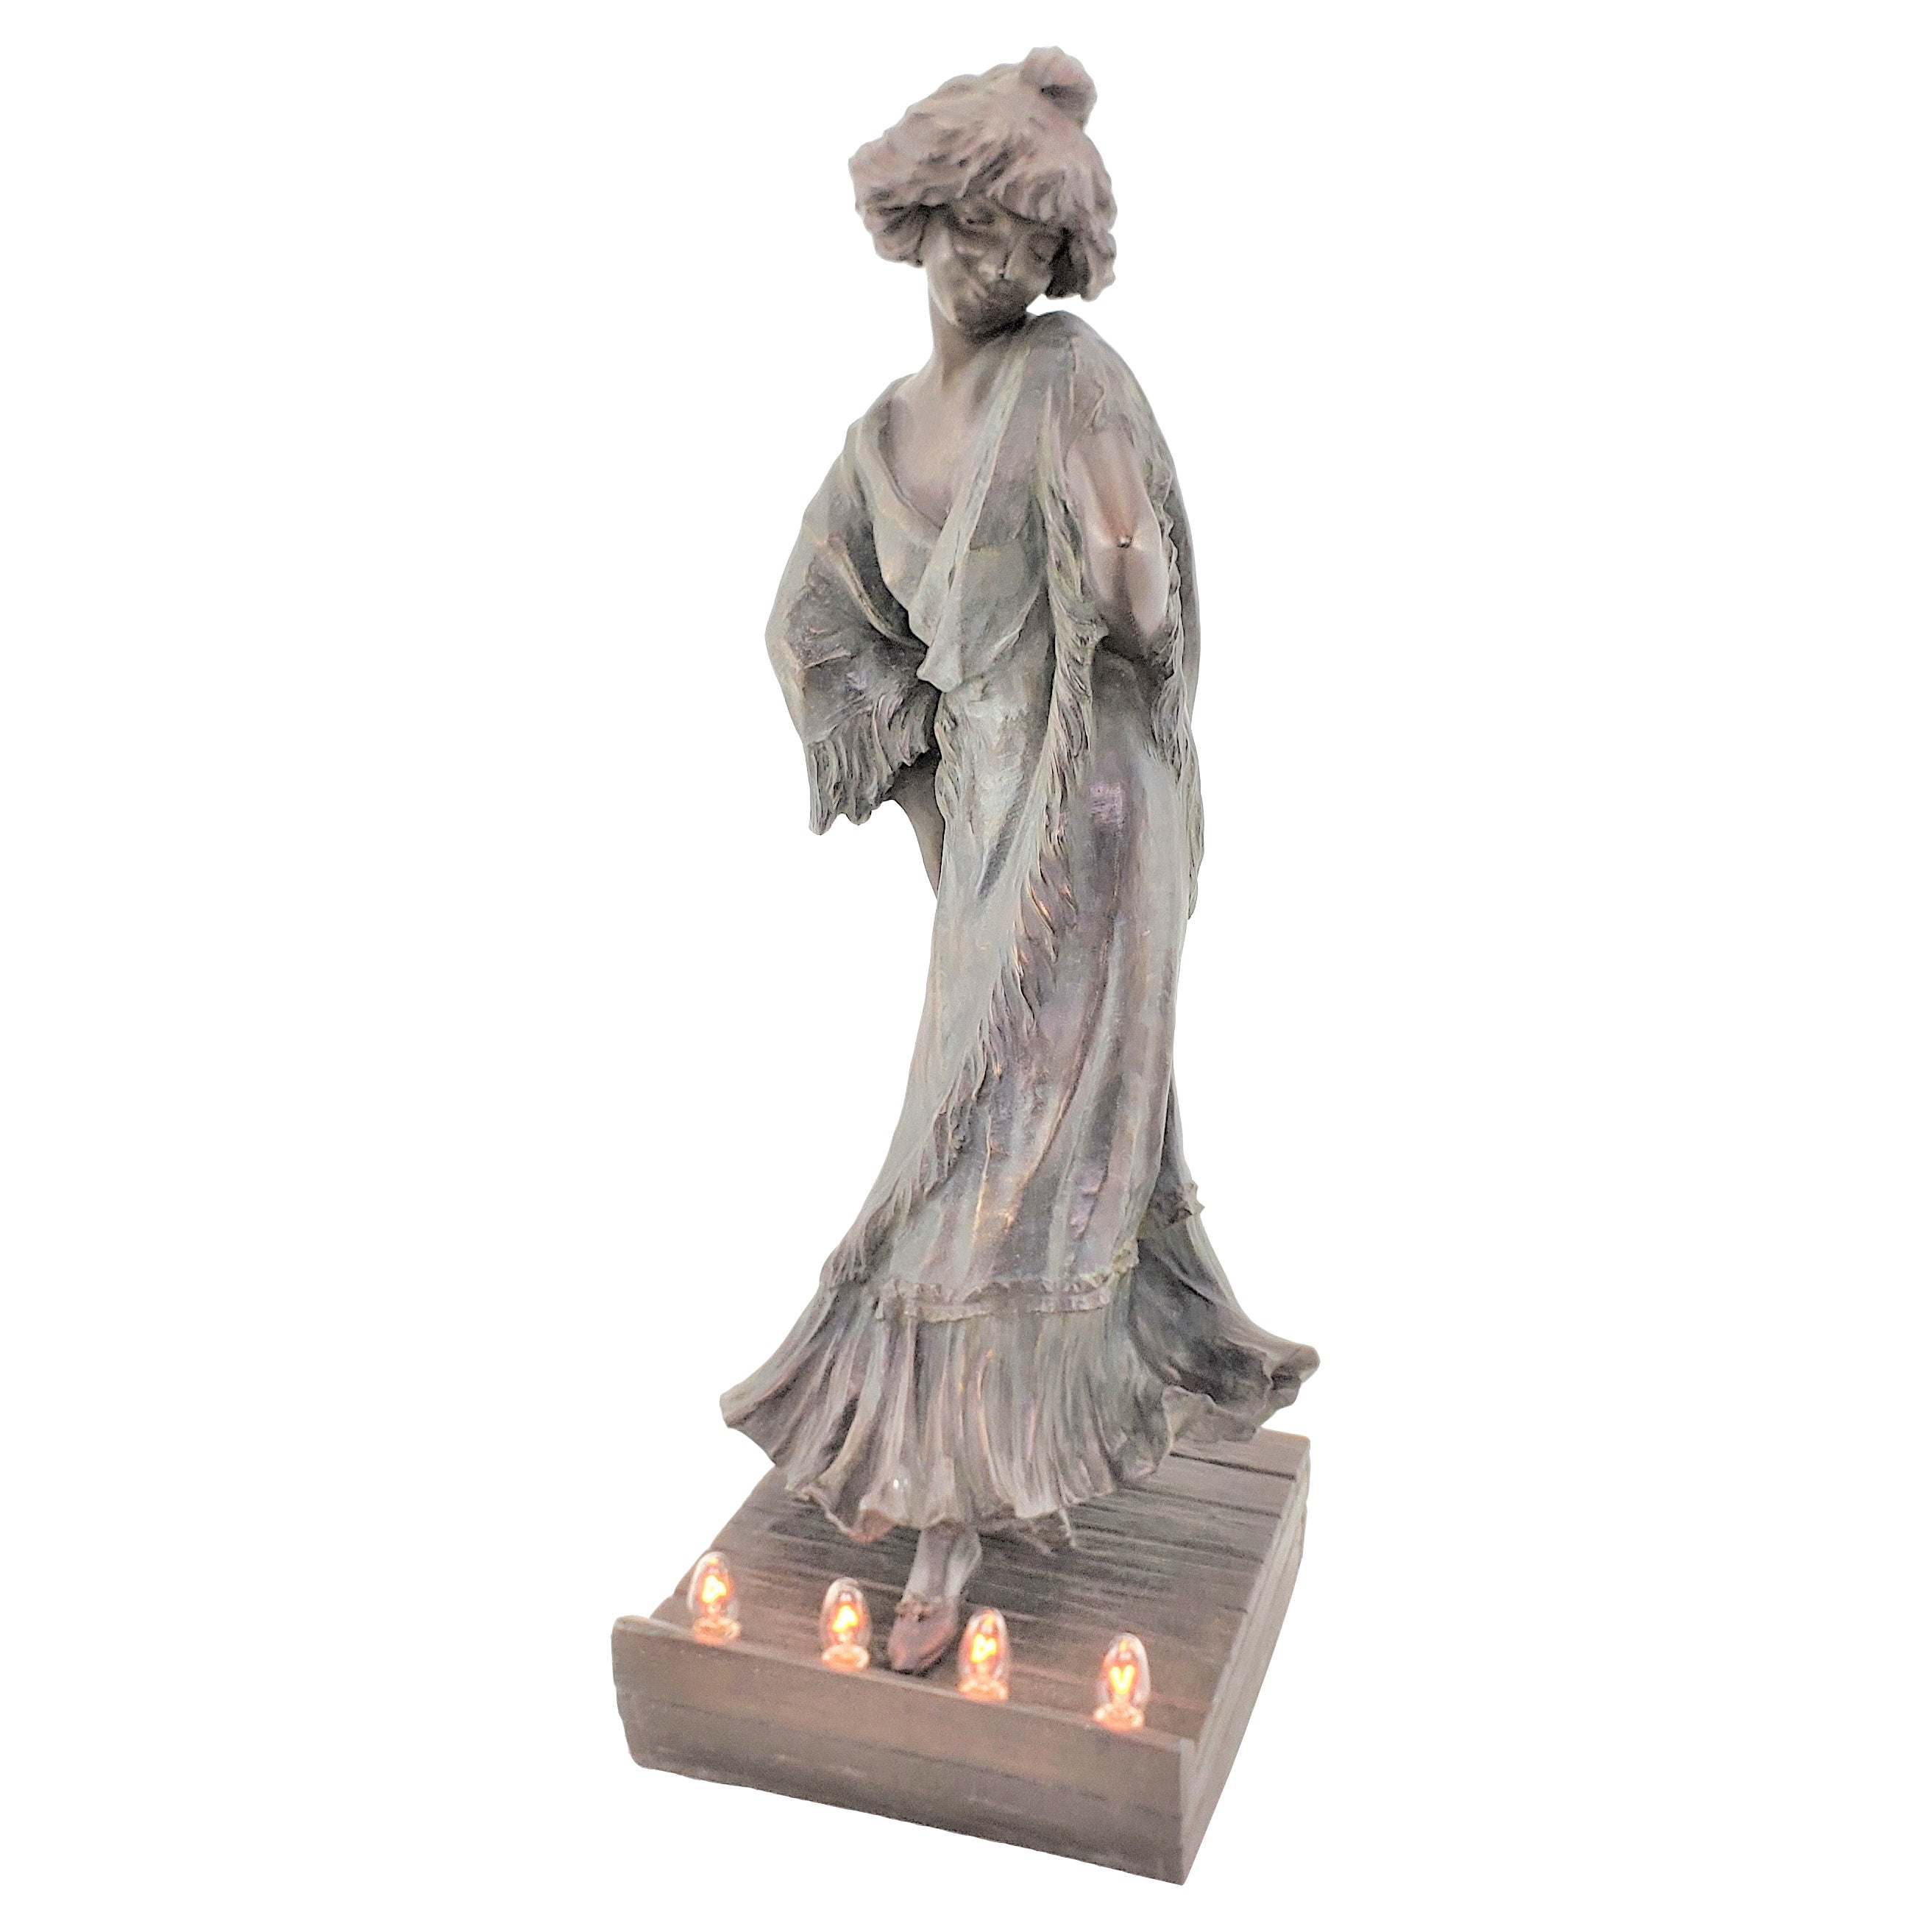 Art nouveau-Stil patinierte, beleuchtete Skulptur von Loie Fuller oder Lampe aus Zinn, signiert